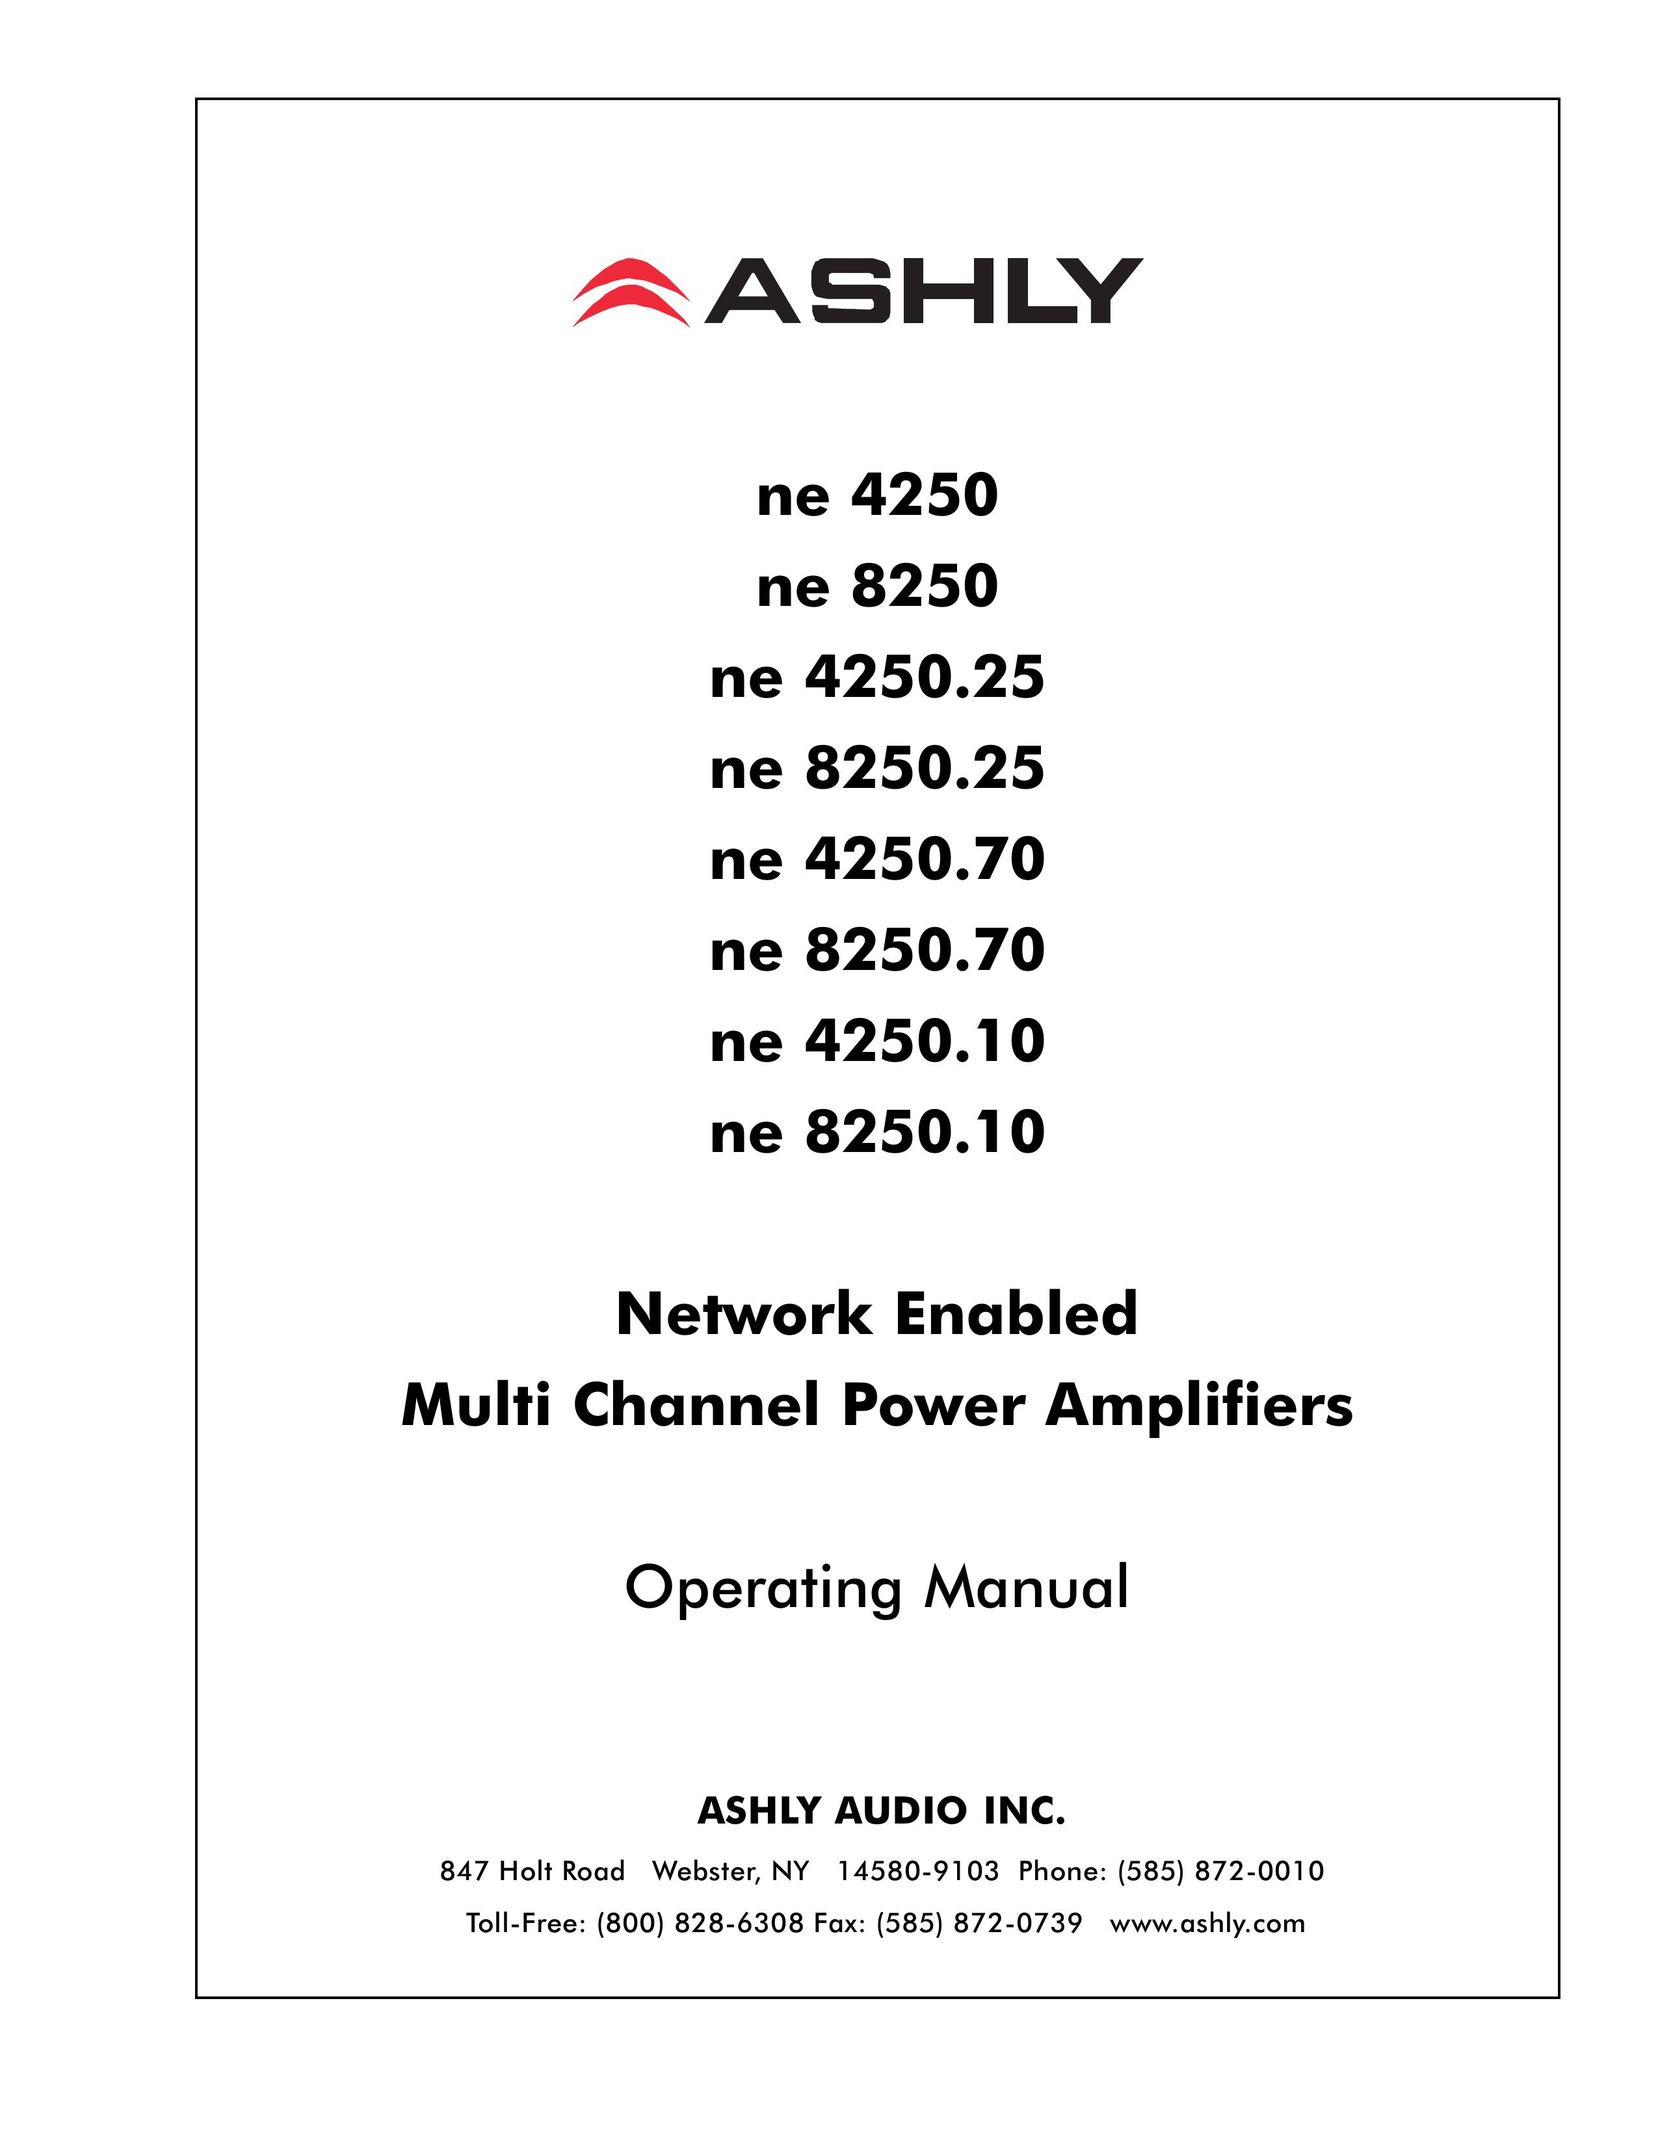 Ashly ne 8250.10 Stereo Amplifier User Manual